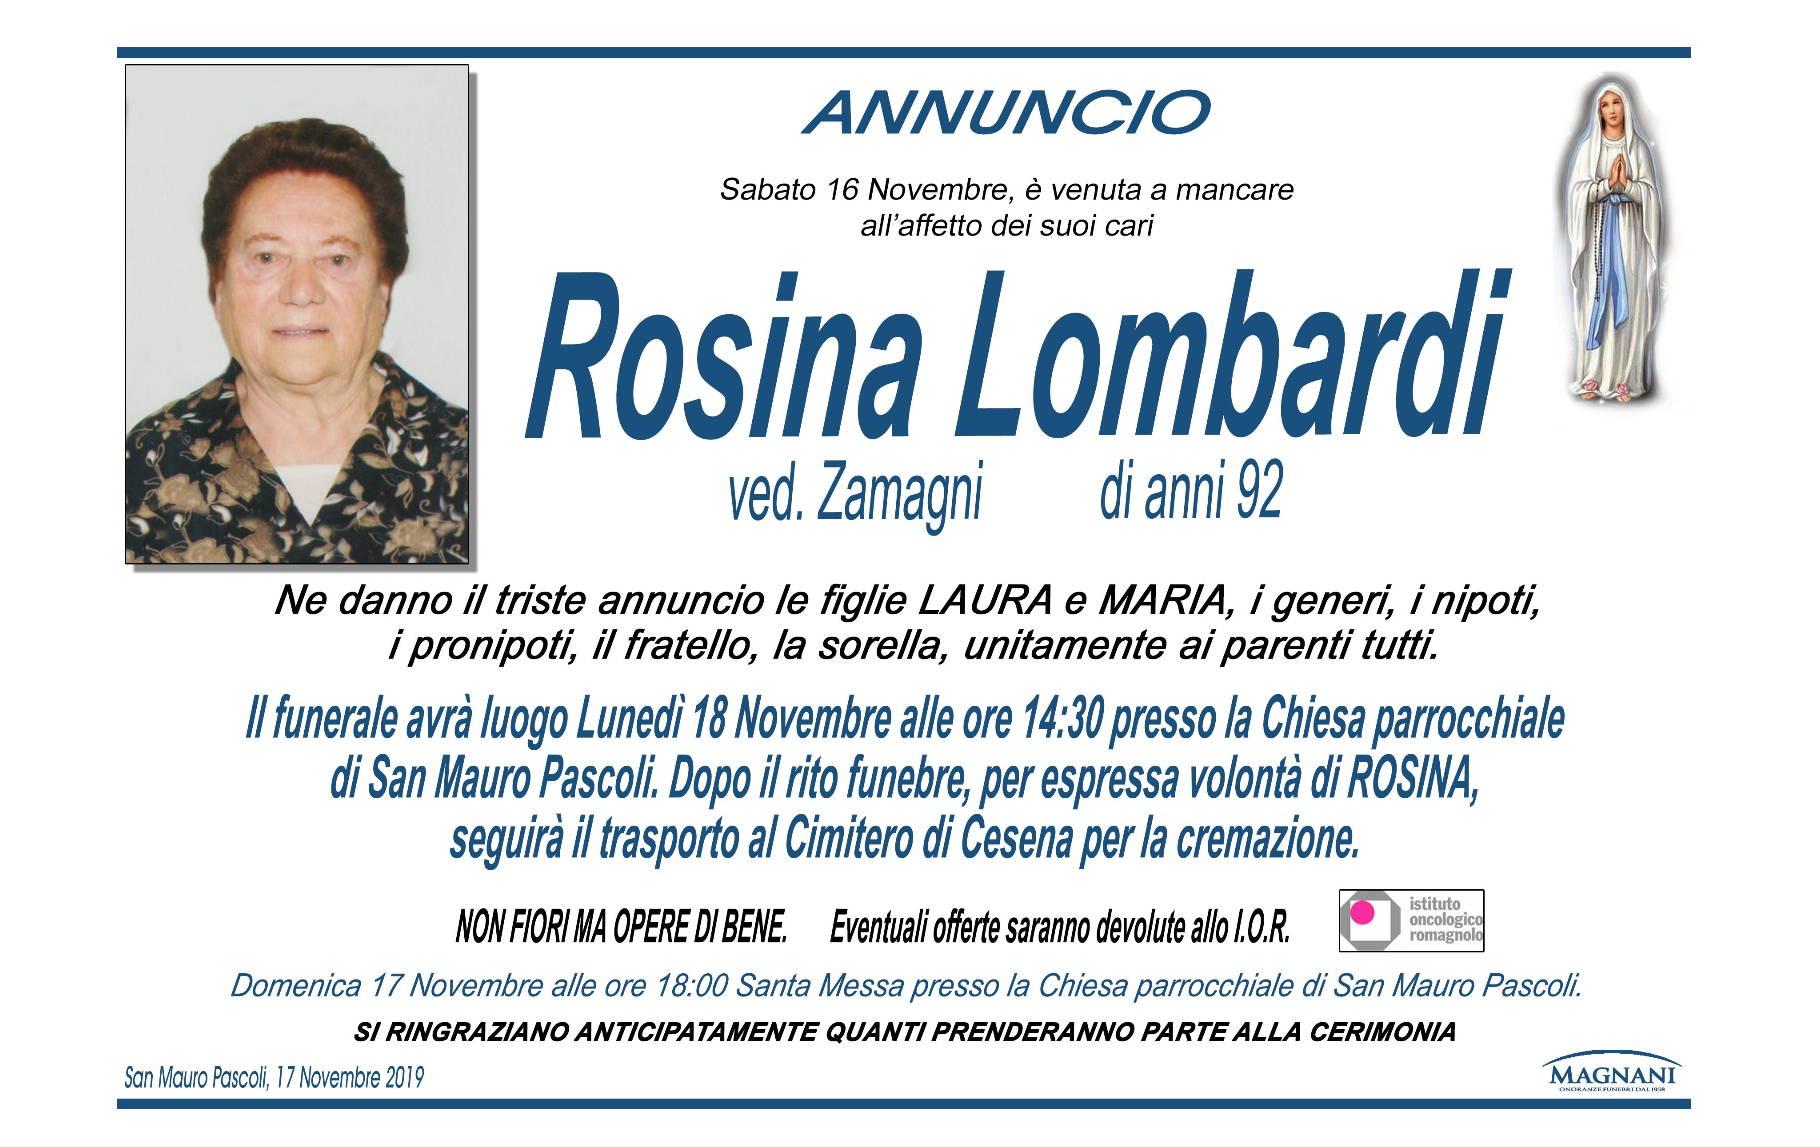 Rosina Lombardi